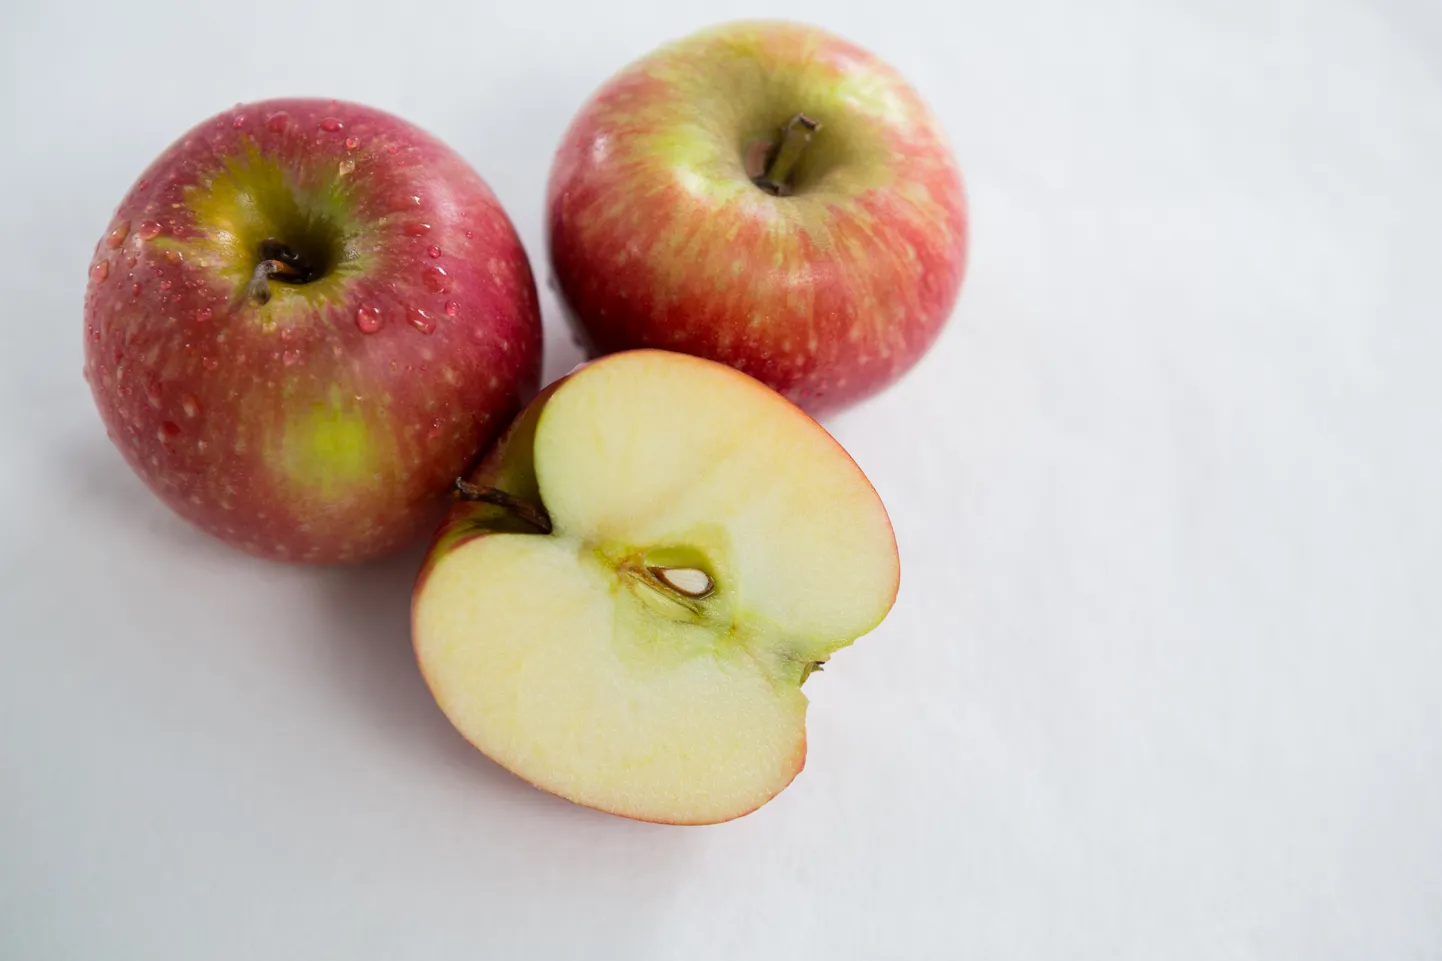 Bioaktiivsete ühendite sisaldus on üldjuhul suurem punasekoorelistes õuntes.